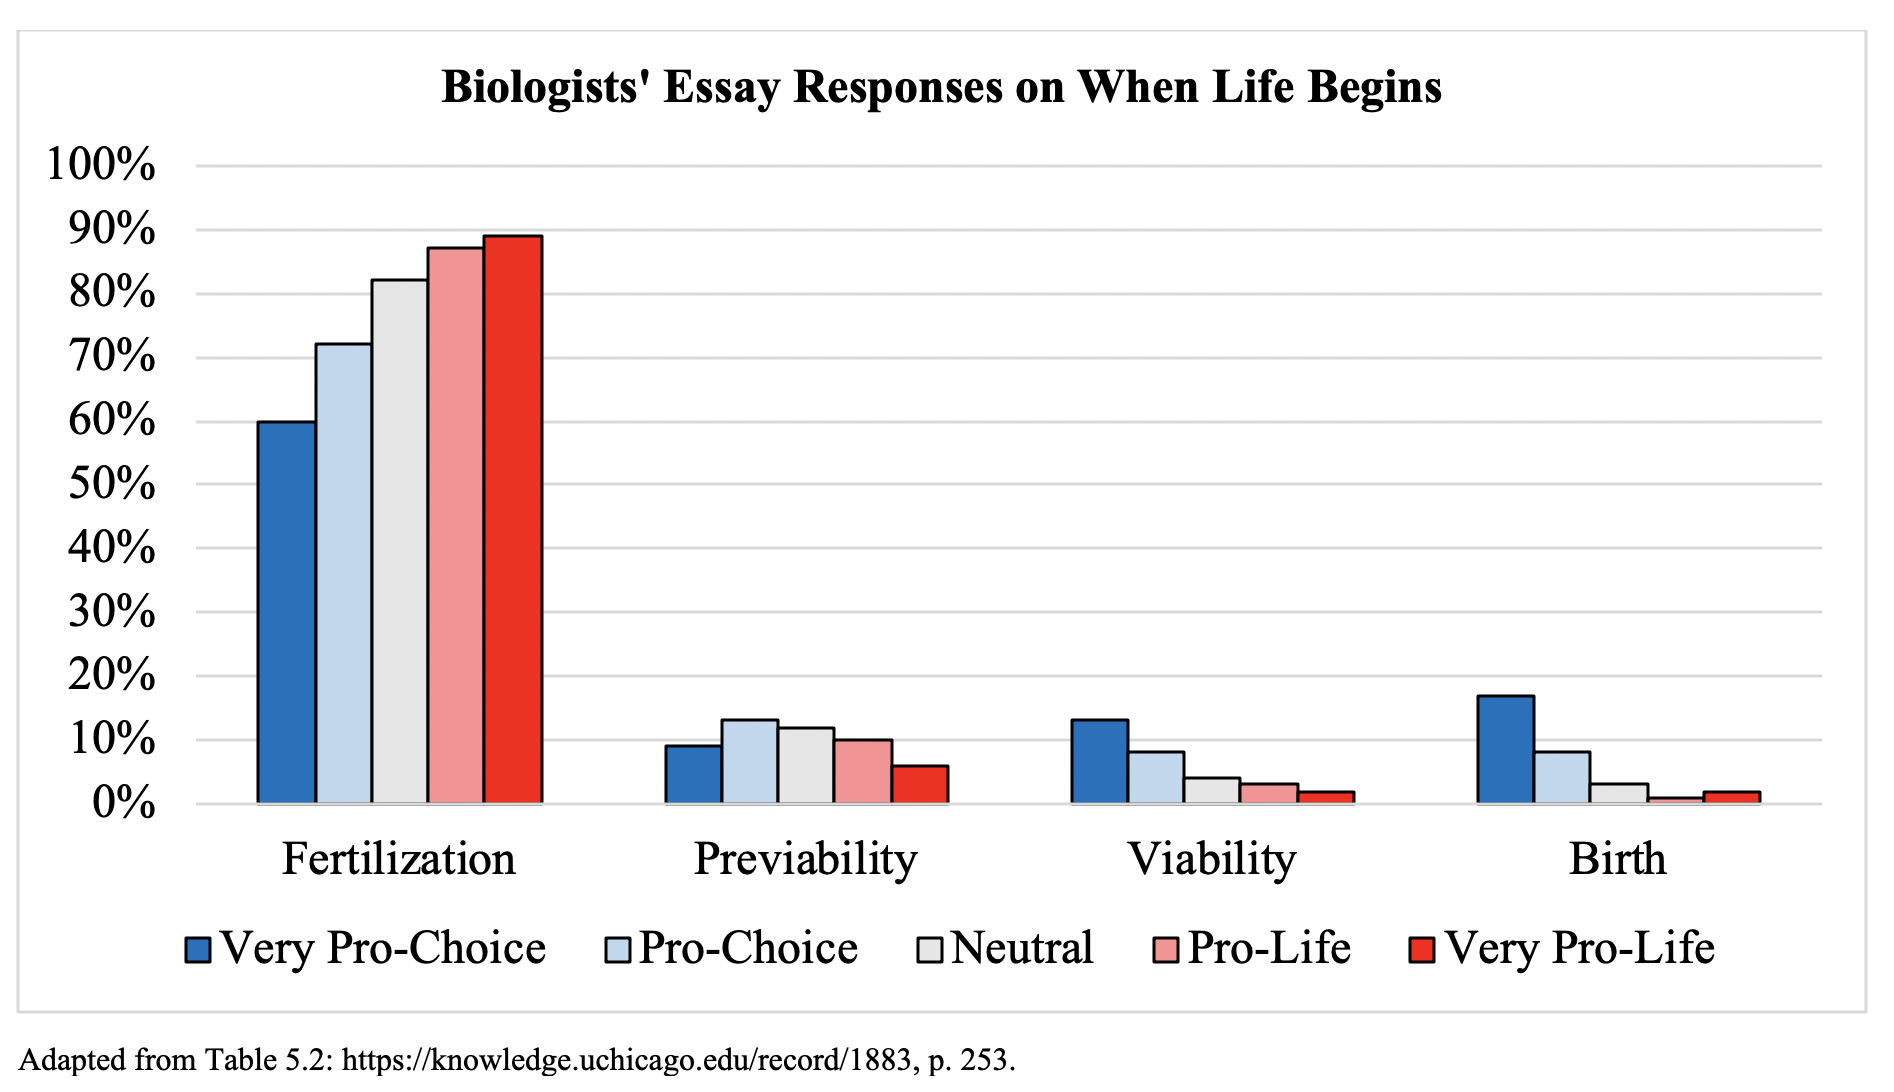 biologists' views